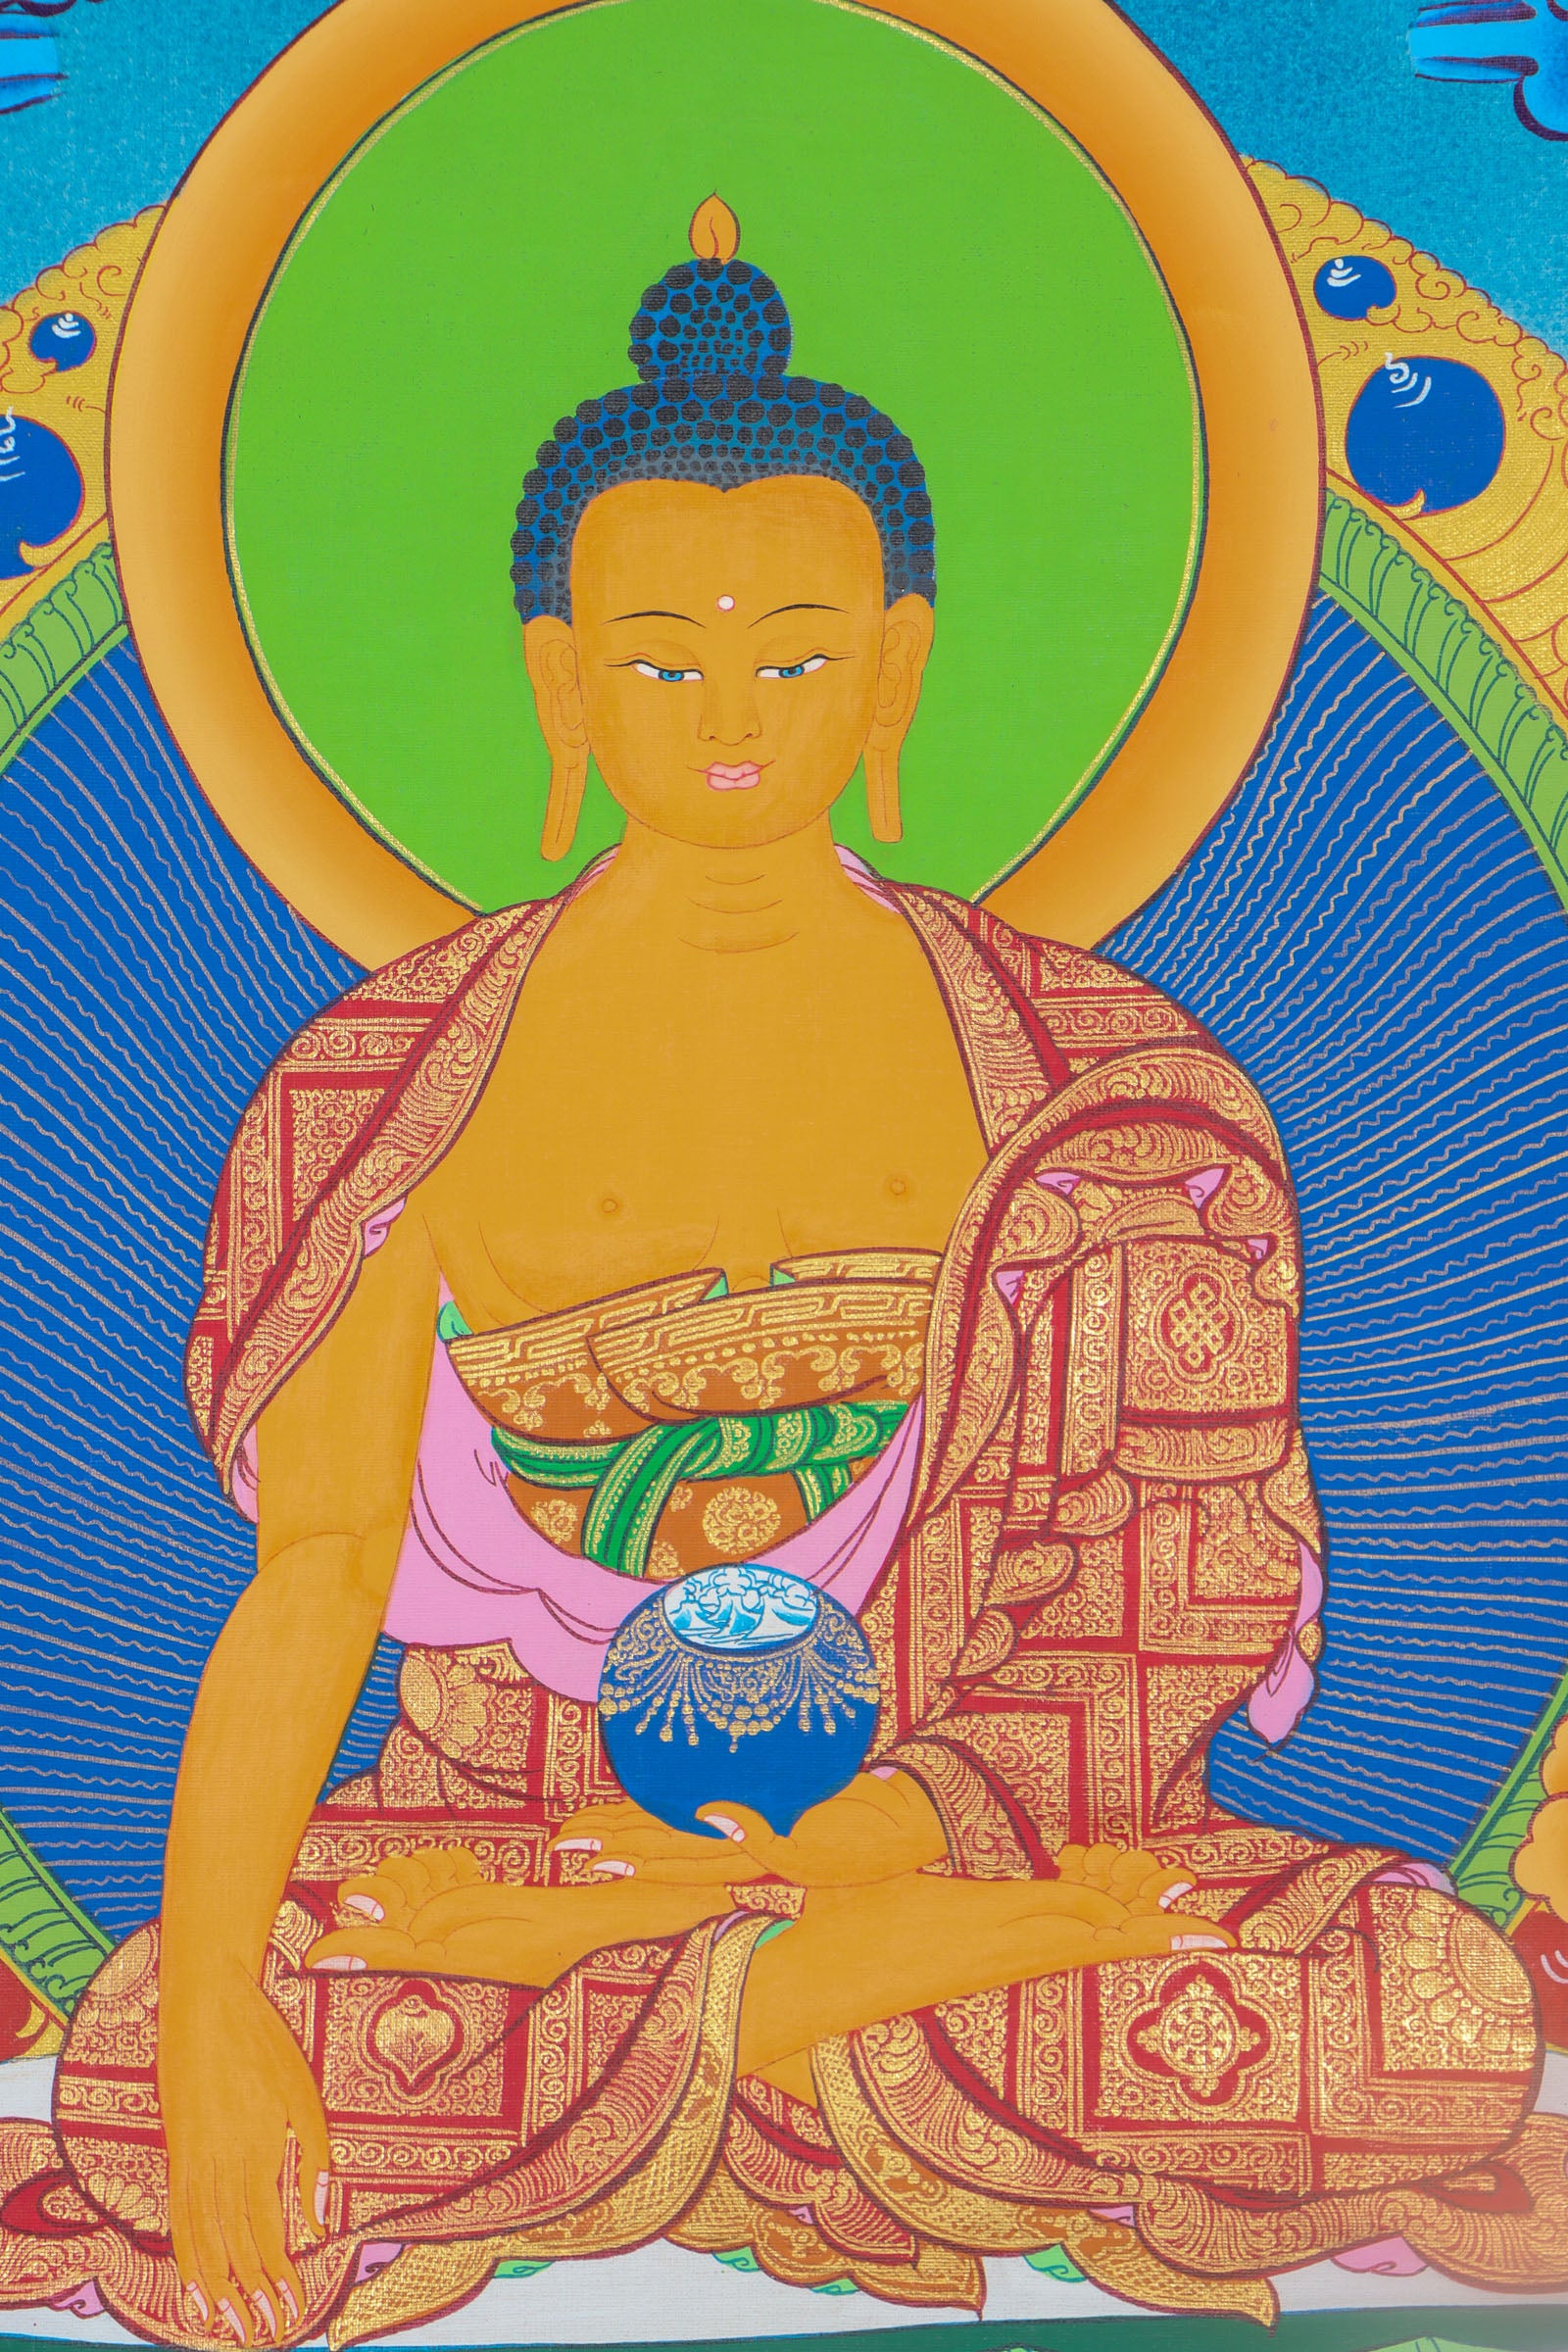 Shakyamuni Buddha Thangka Painting for meditation practices.